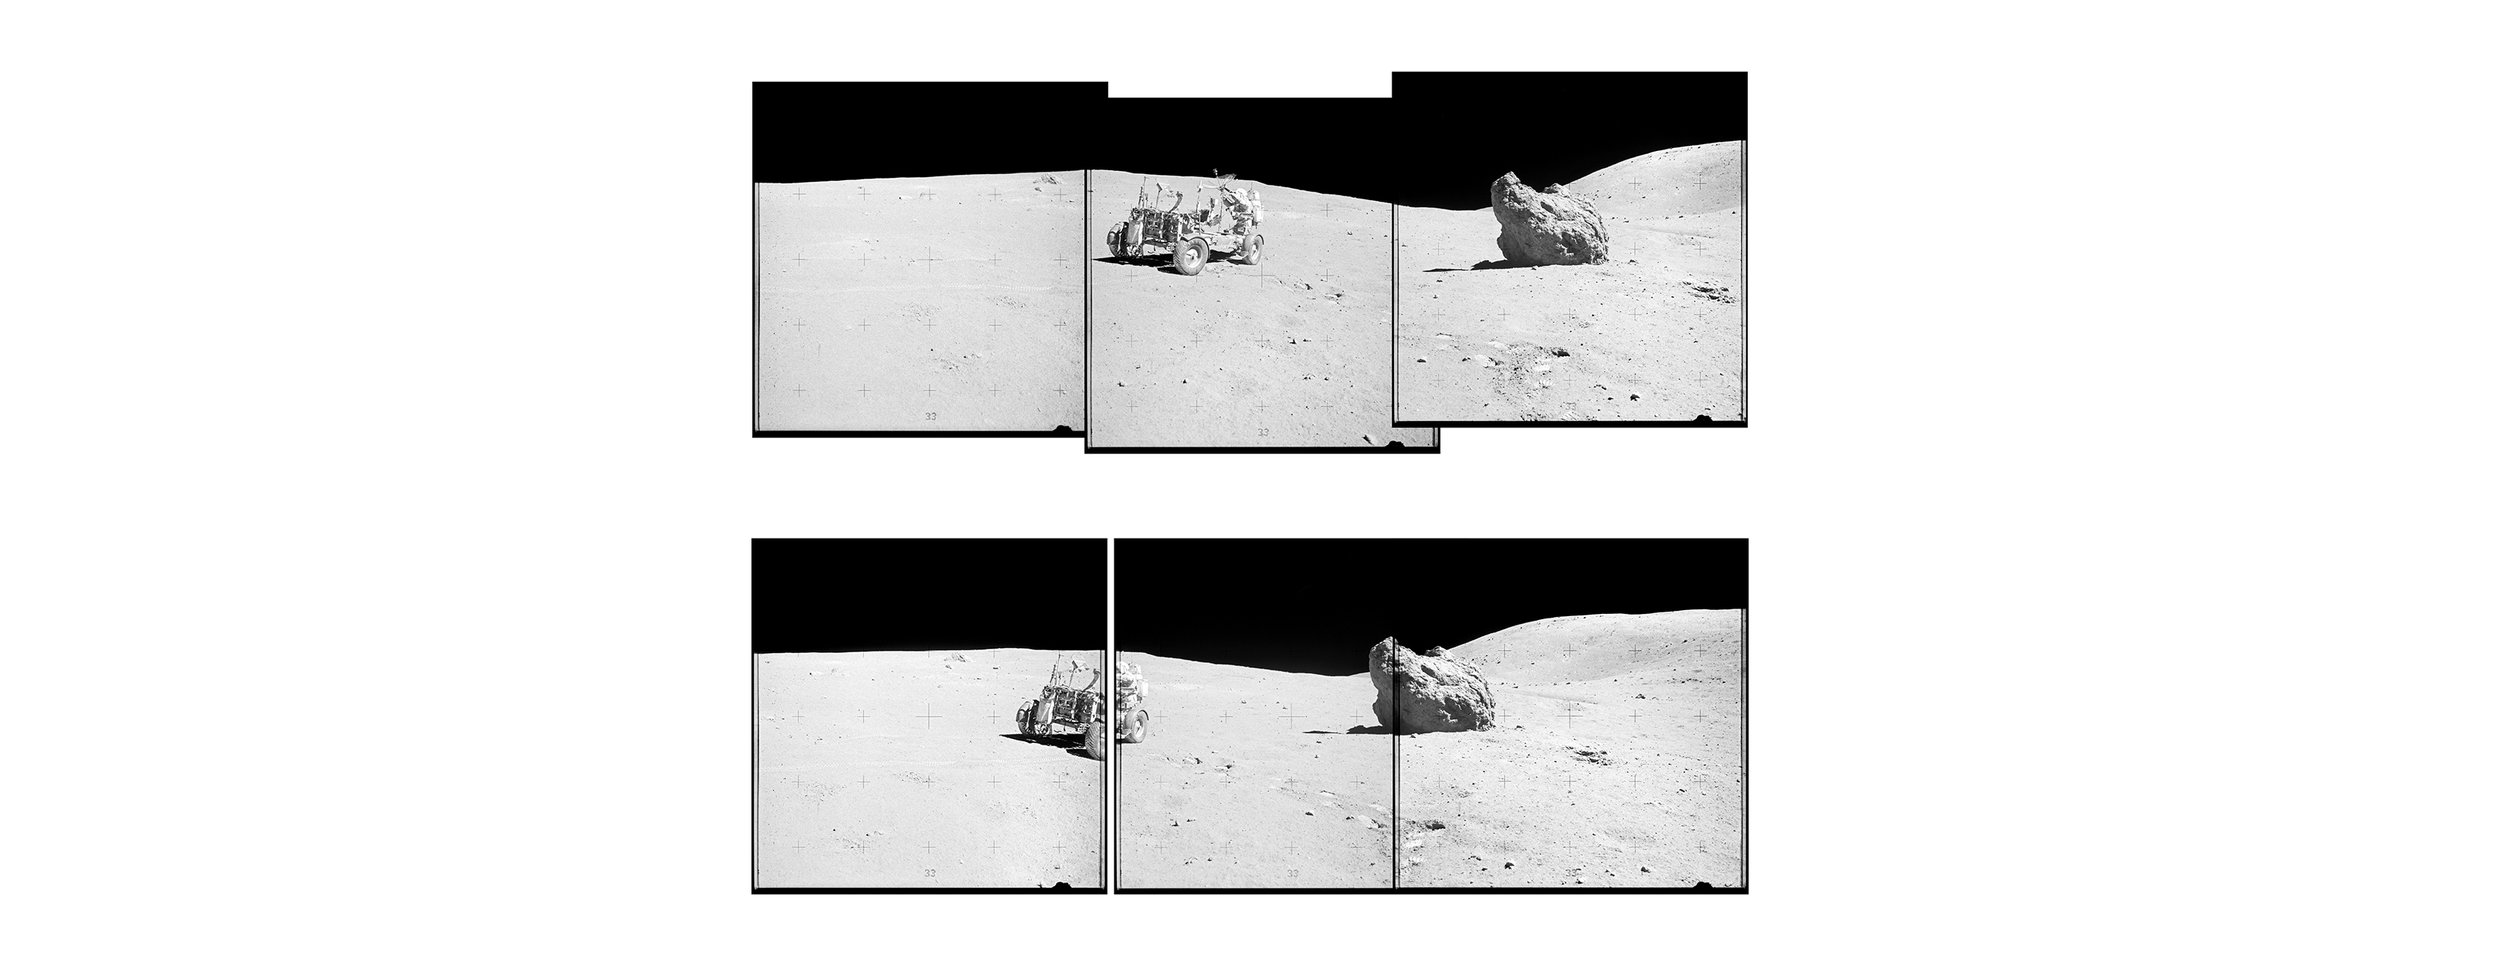  Descartes Mountains, LRV (Lunar Roving Vehicle) (130x60)Apollo 16 Magazine 107/C - NASA photographs 1972 